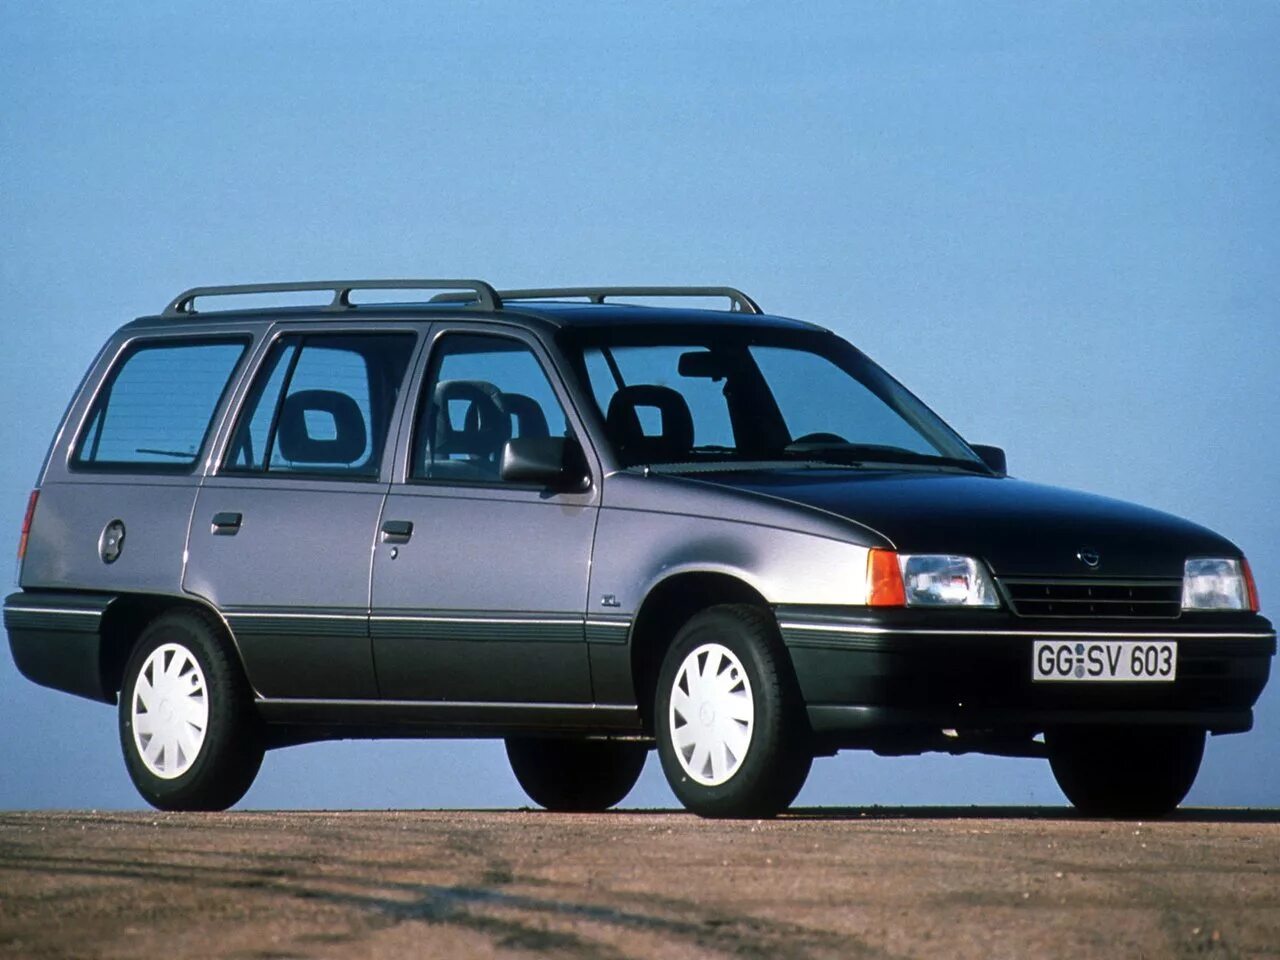 Opel Kadett e универсал. Опель кадет 1.3 универсал. Opel Kadett 1993 универсал. Опель кадет 1984 универсал.